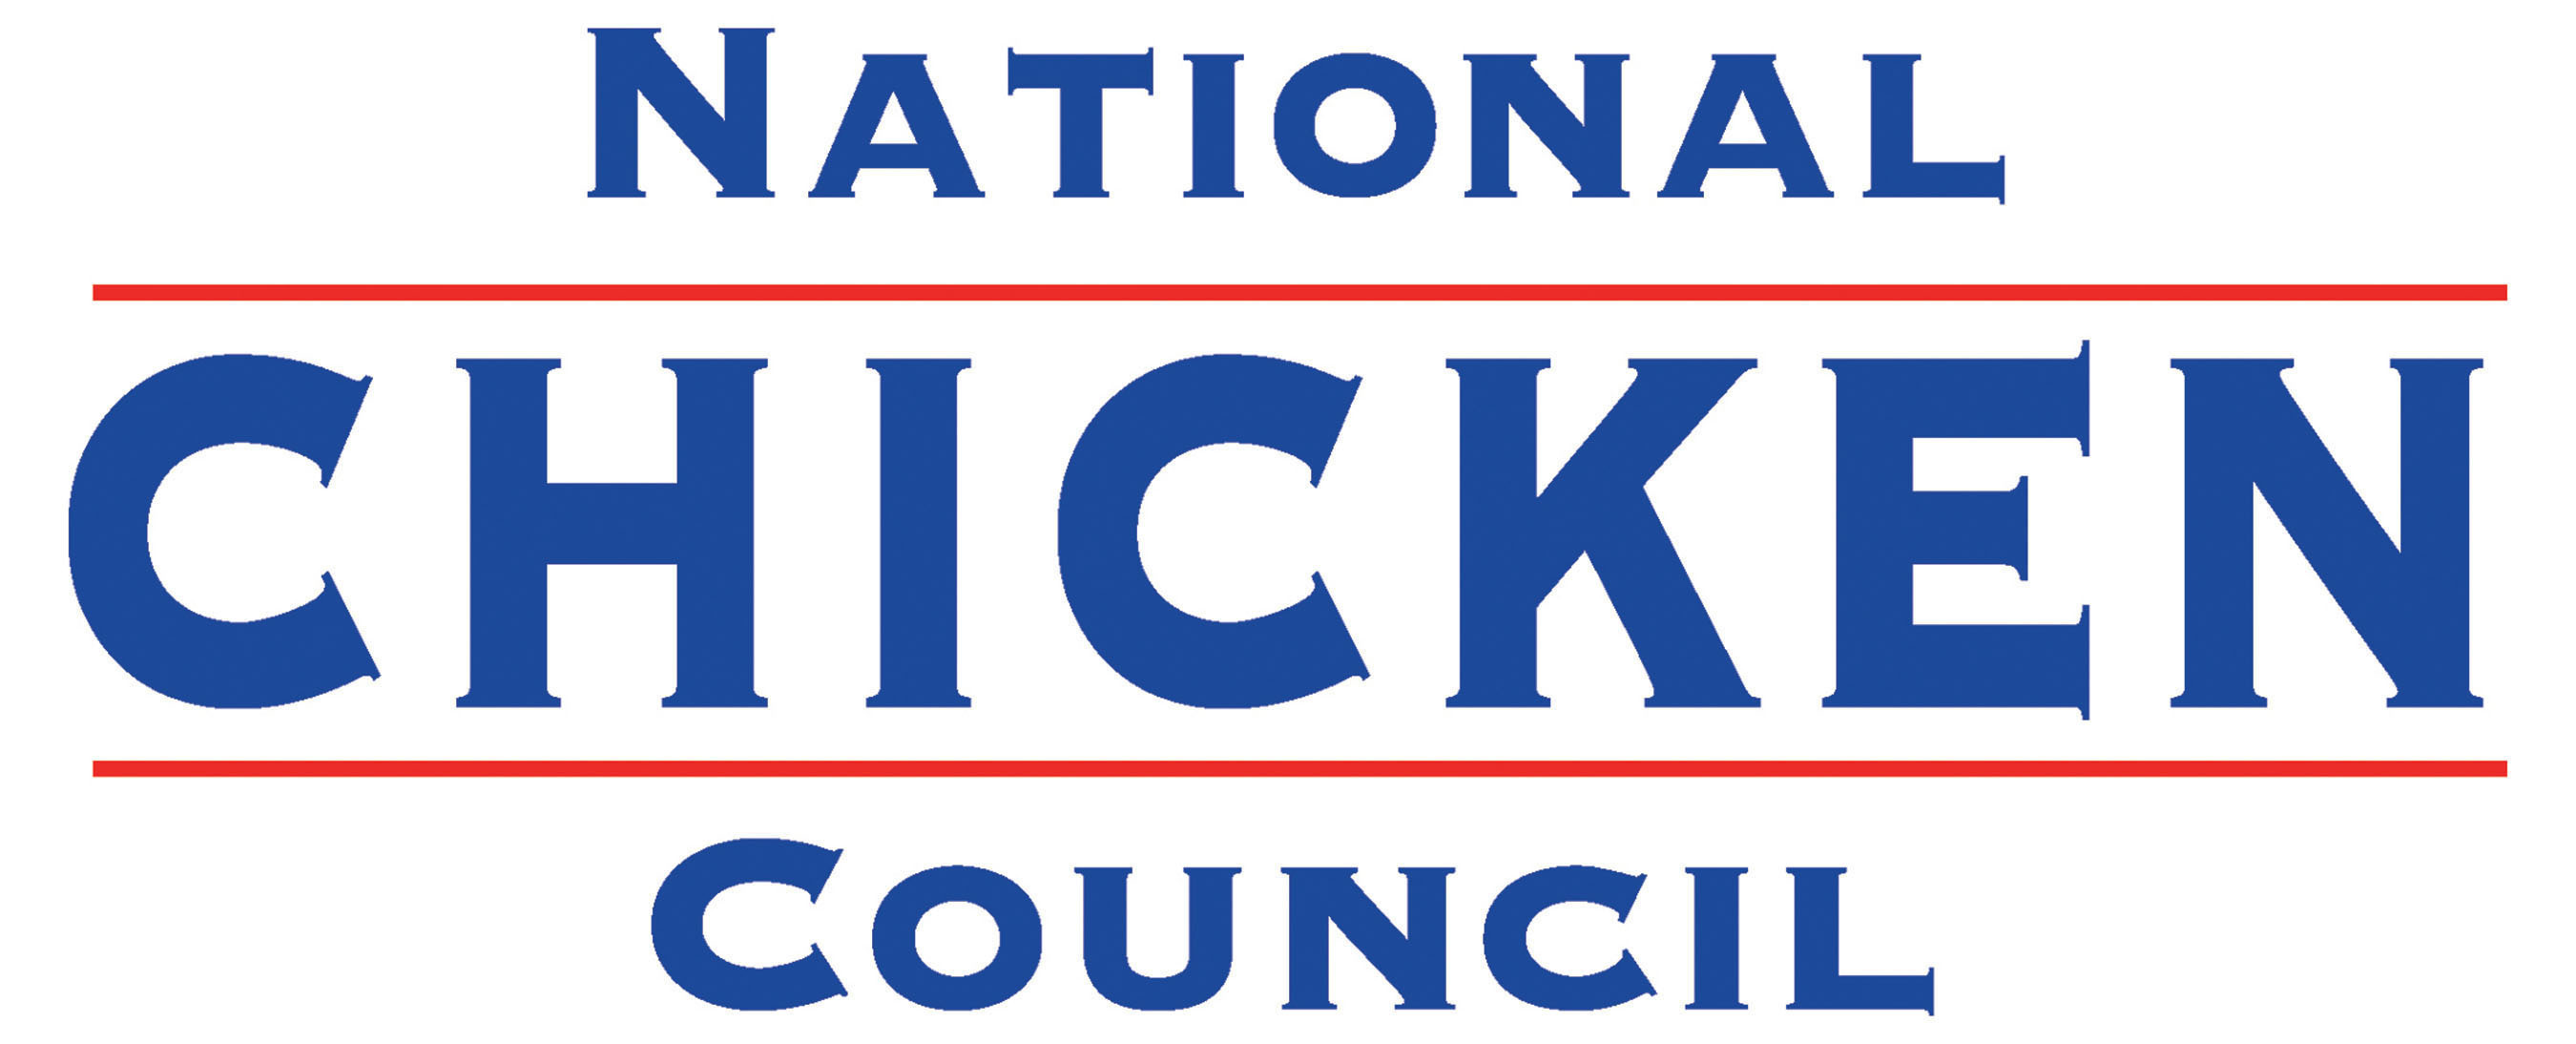 National Chicken Council Logo